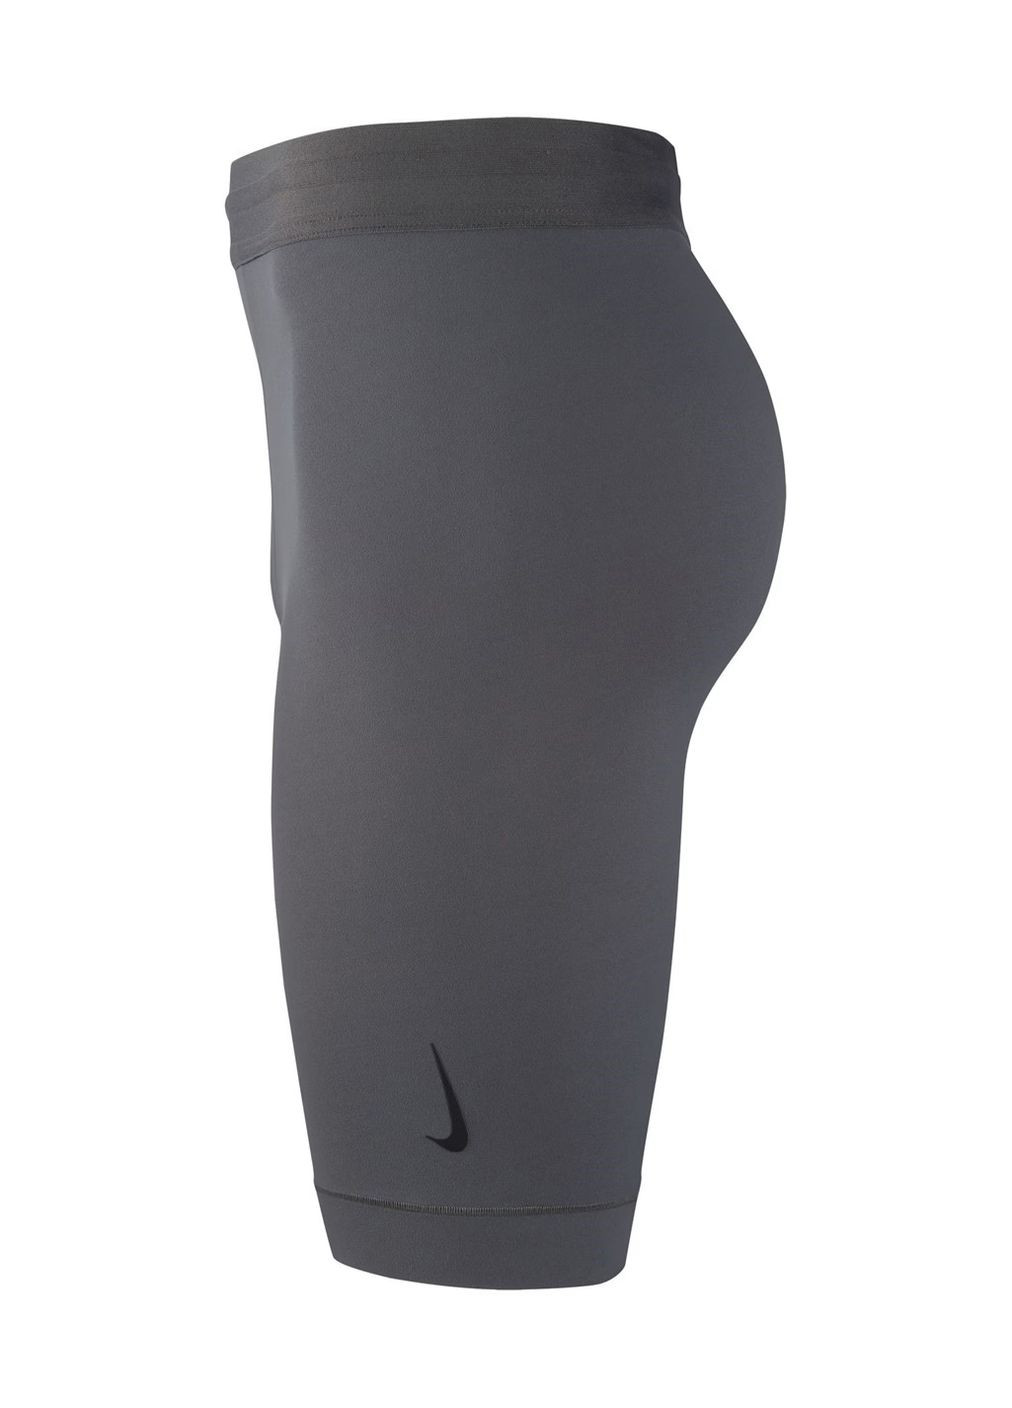 Шорти компрессионние труси спортивние термо велосипедки Nike mens infinalon shorts grey (270016355)